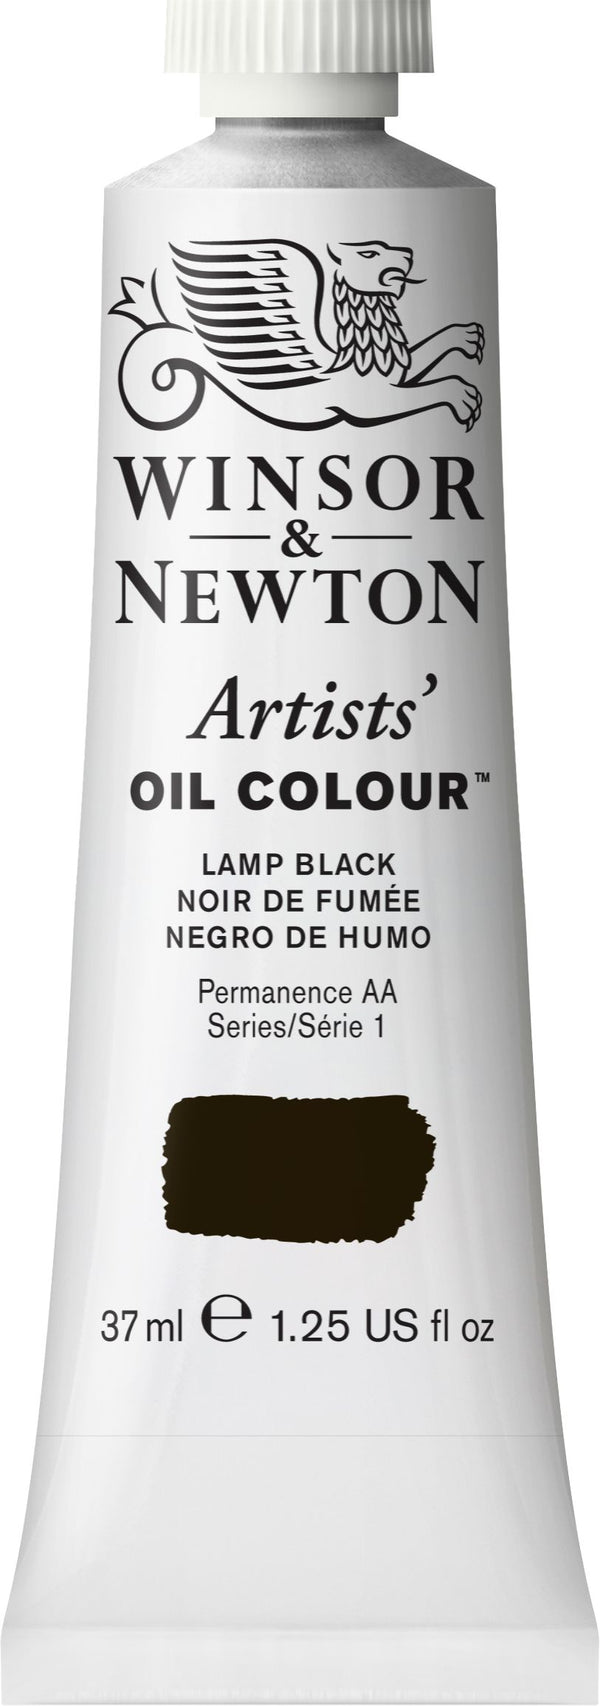 Winsor Newton Artist Oil Lamp Black 337 - Series 1 - 37ml tube